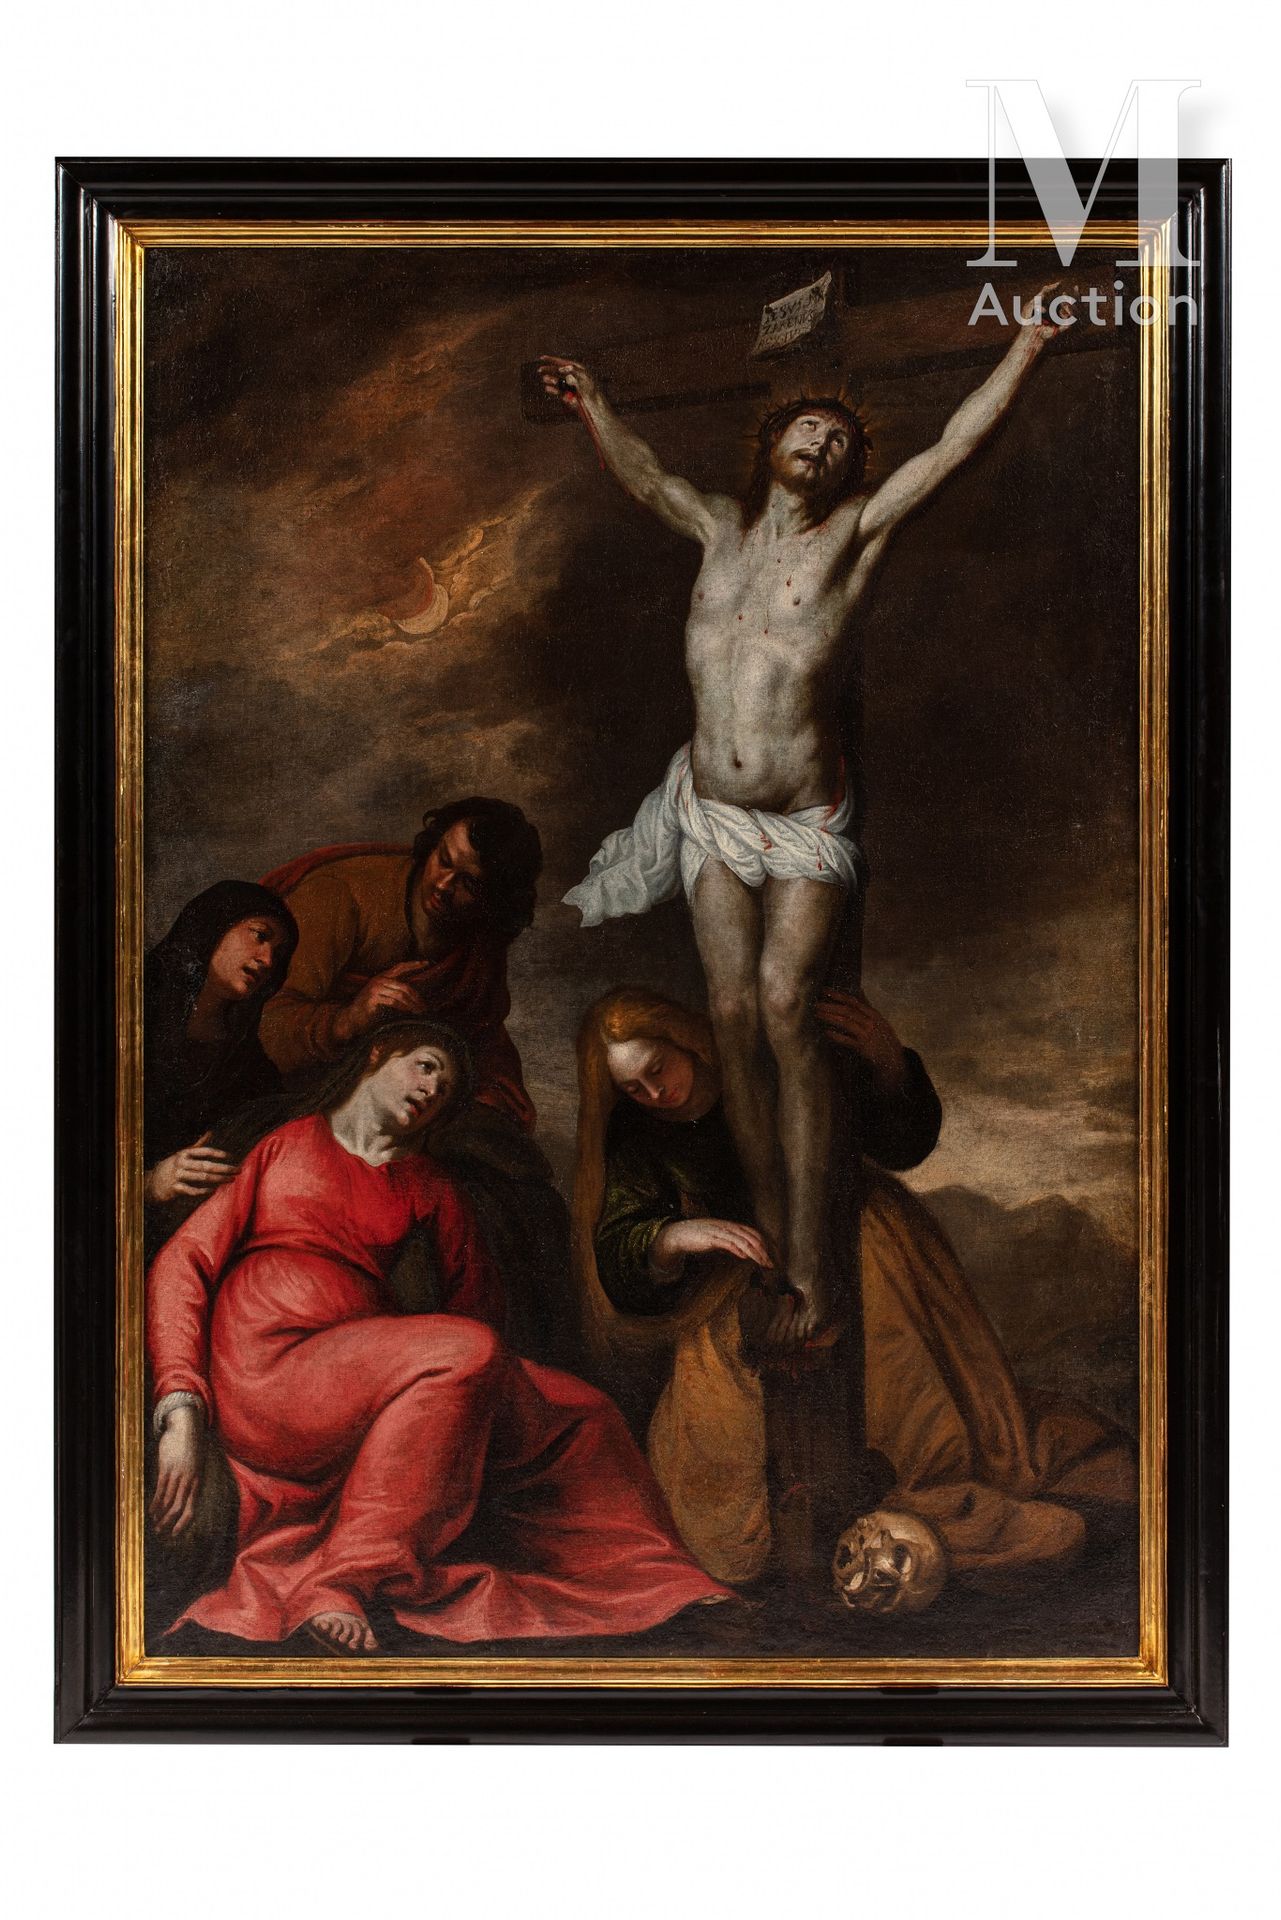 Luciano BORZONE (Gênes 1590 - 1645) Crocifissione

Tela

A: 170 x L: 120 cm